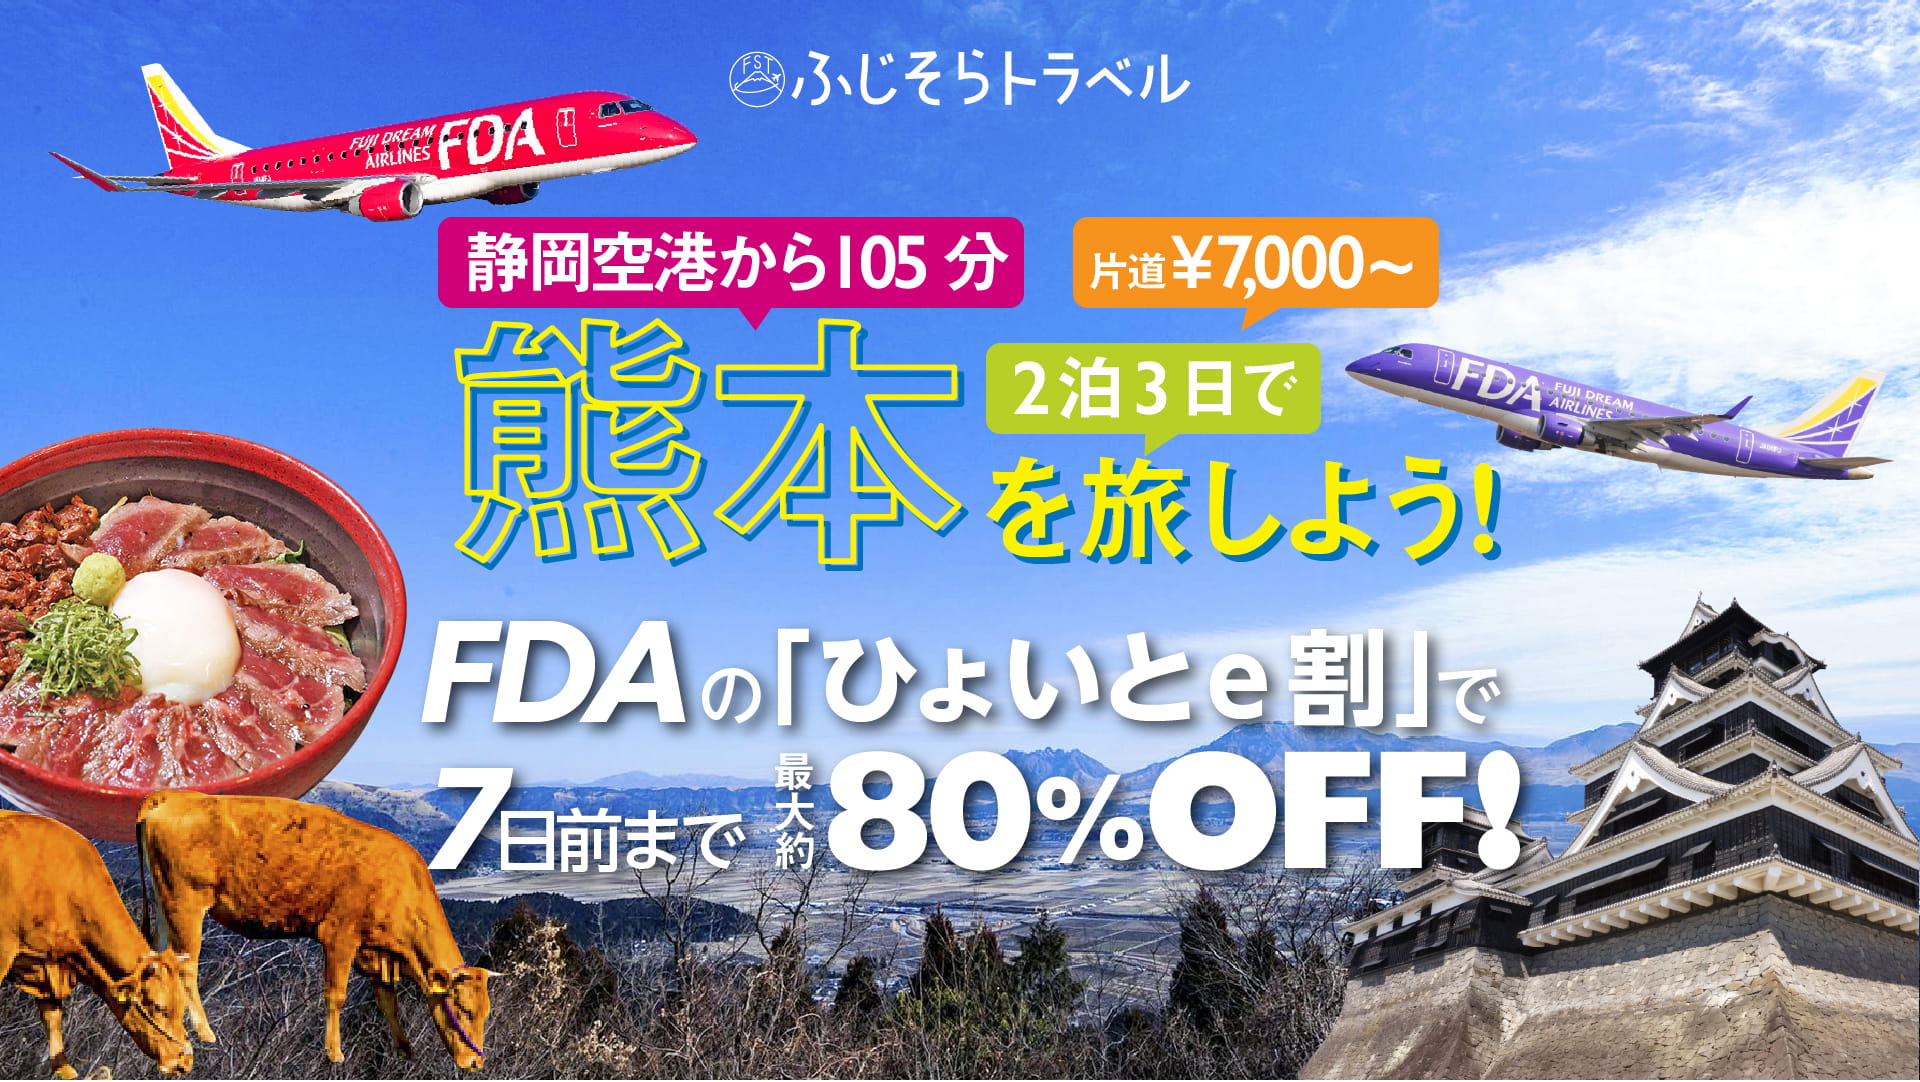 FDA熊本便PRのメインビジュアル画像